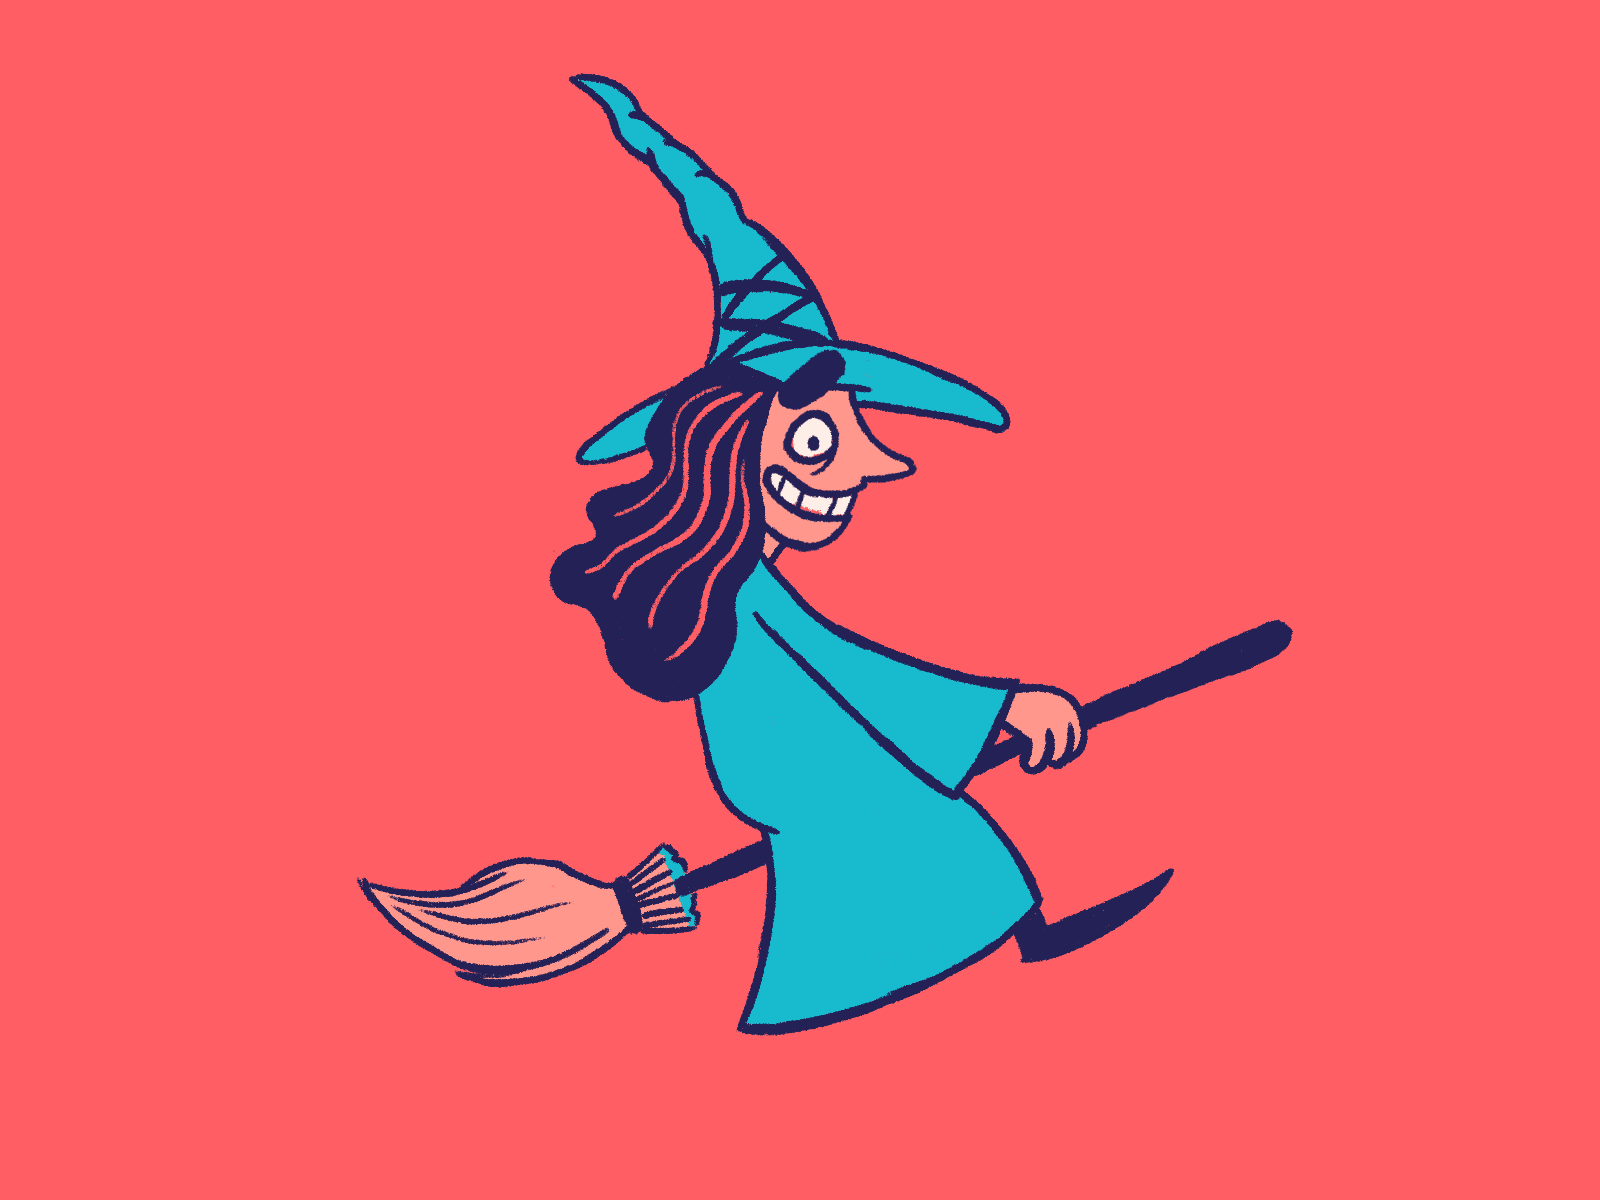 Crazy Witch